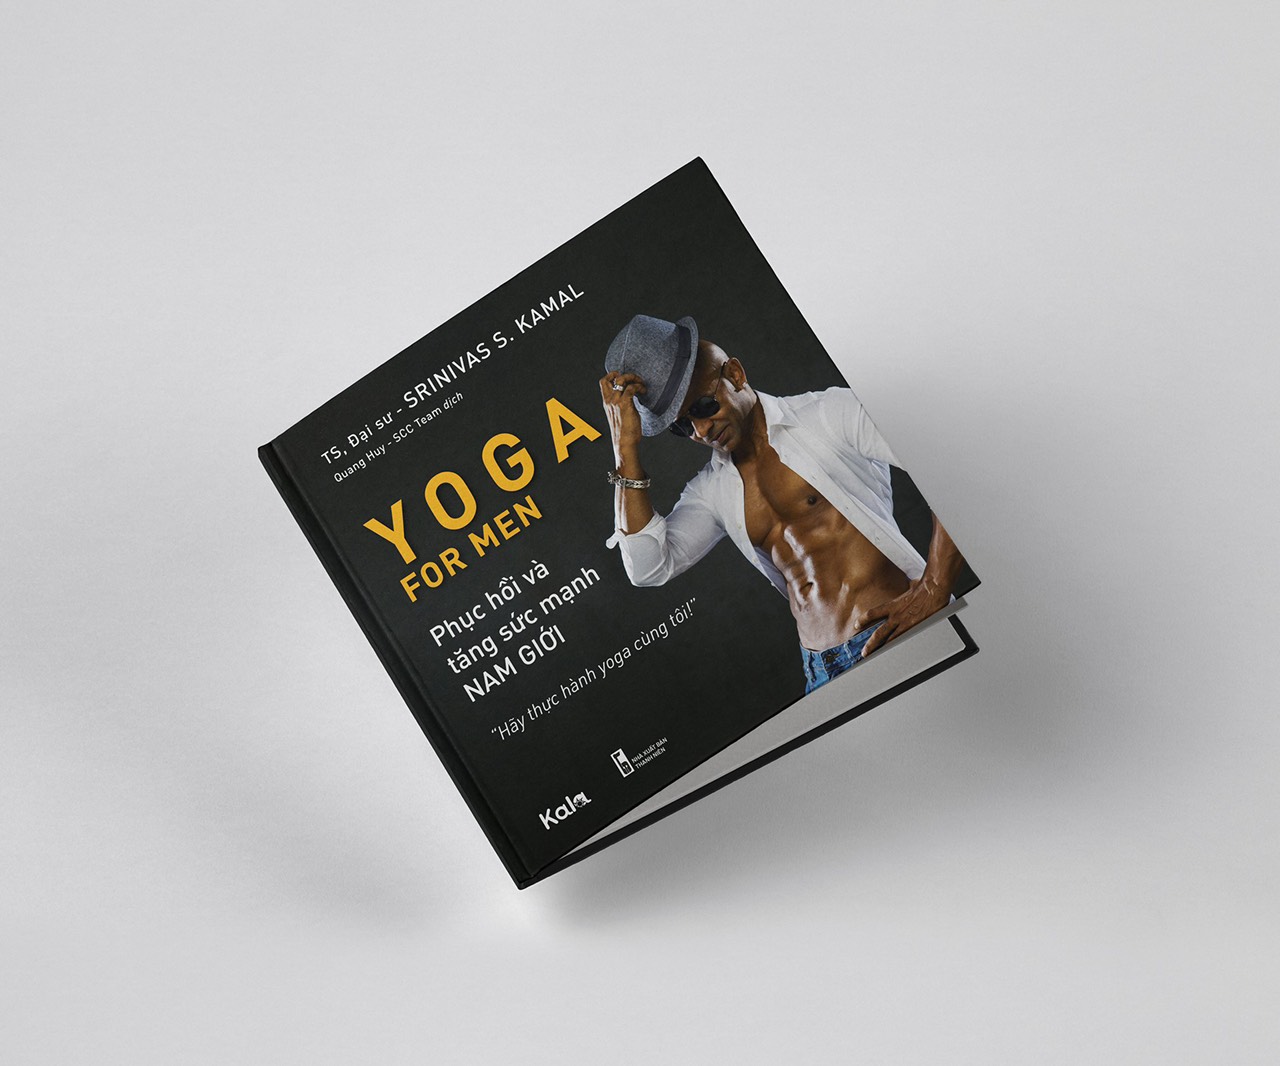 Bìa sách Yoga for men.jpg